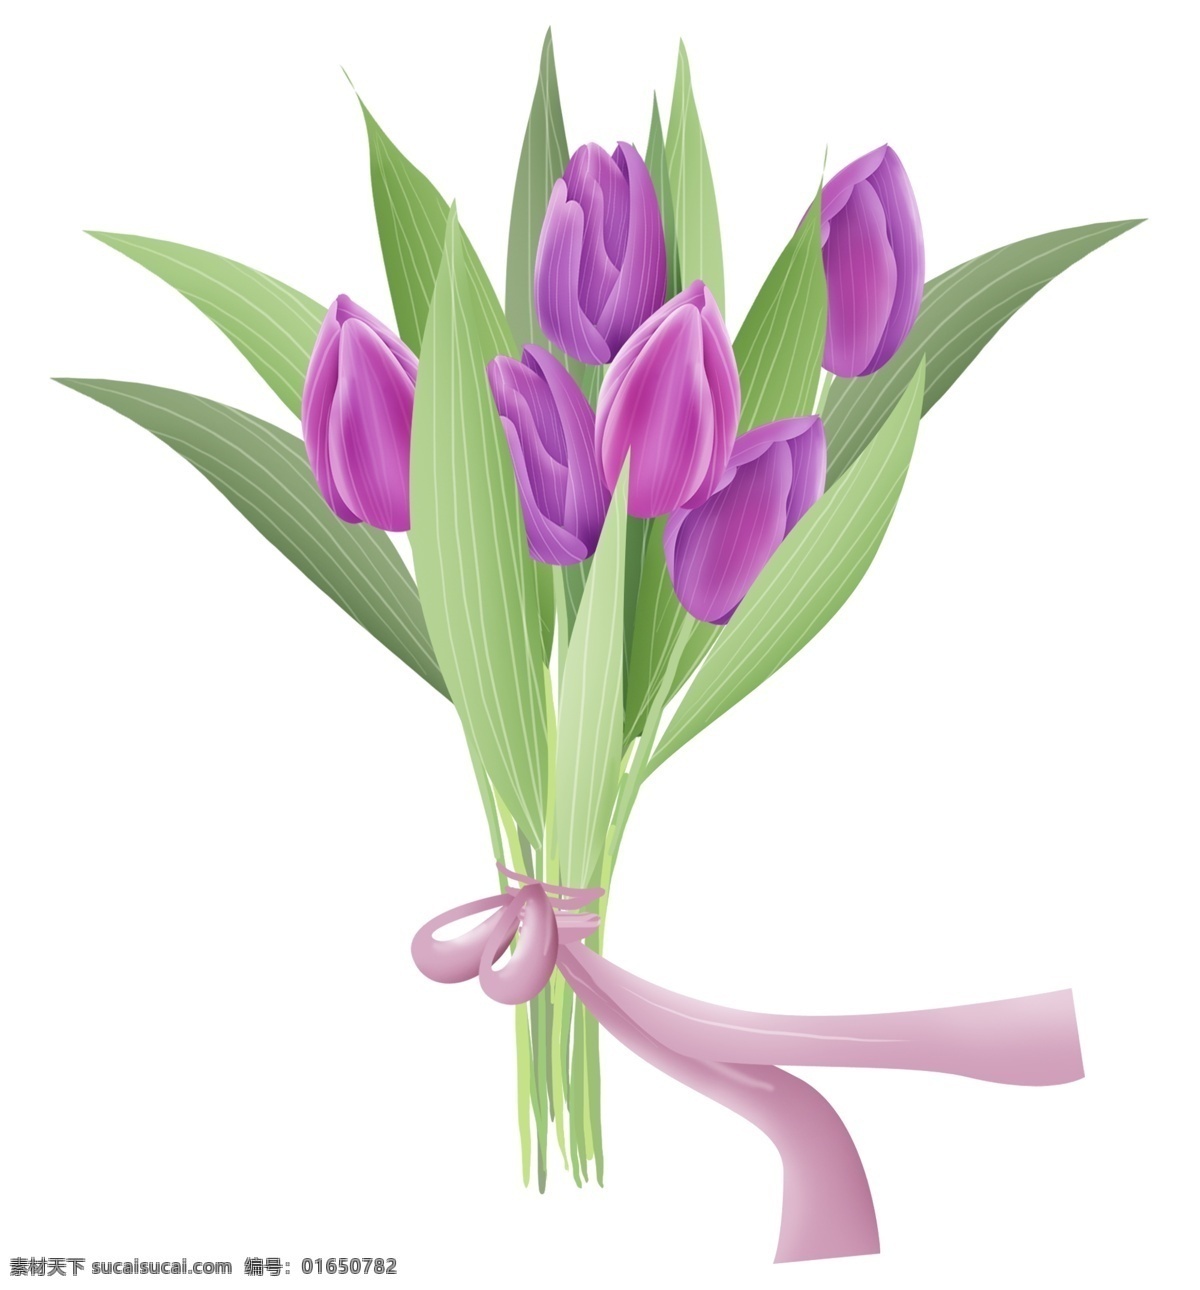 紫色 郁金香 花束 郁金香花束 花艺 花卉 春天 紫色郁金香 郁金香种植 叶子 植物